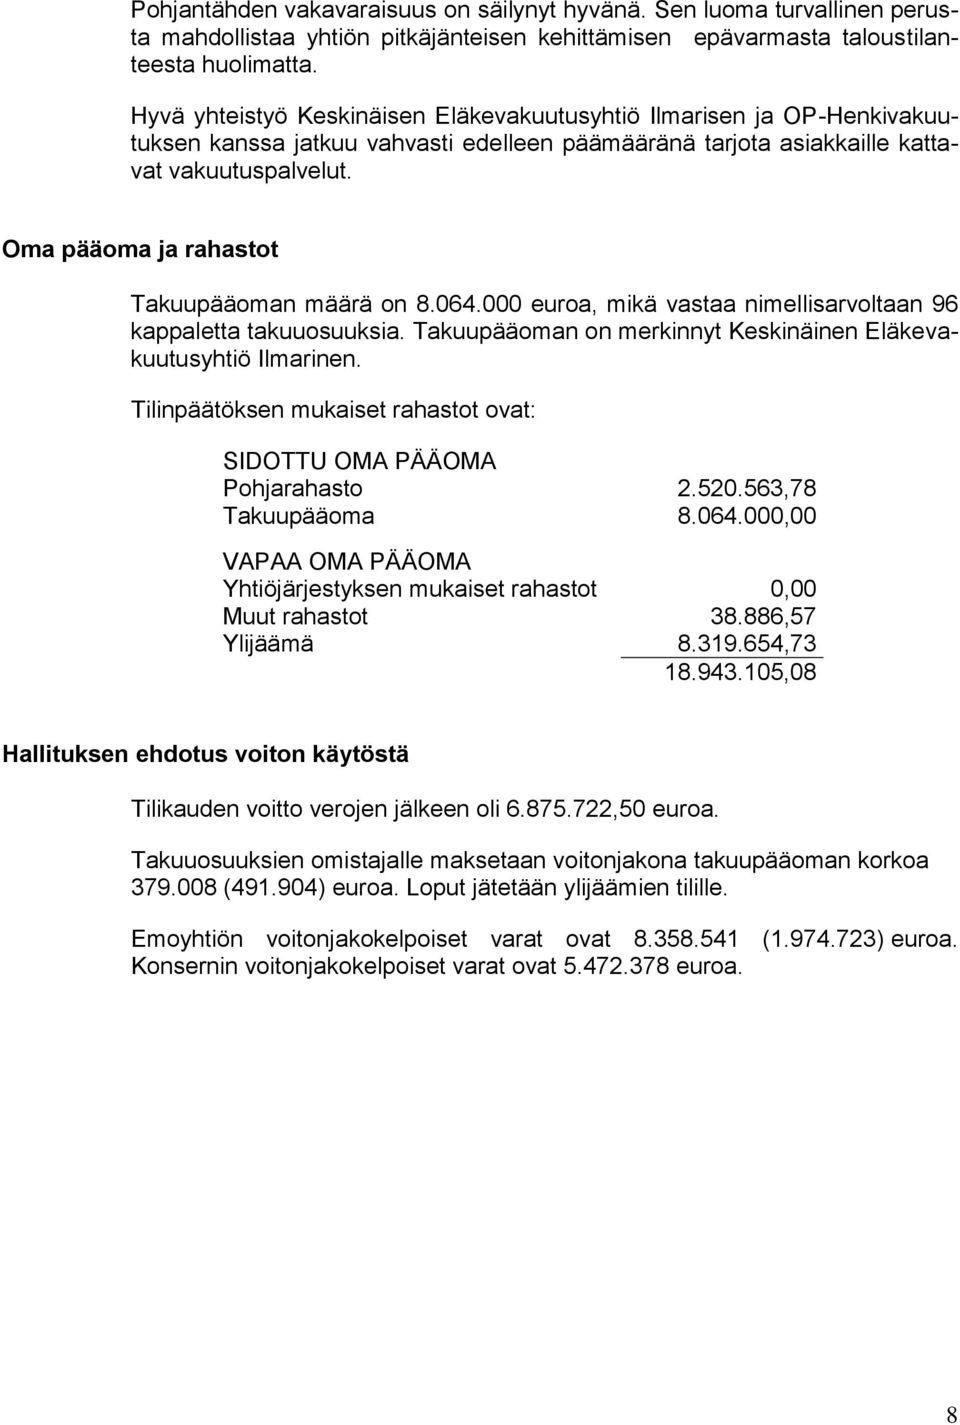 Oma pääoma ja rahastot Takuupääoman määrä on 8.064.000 euroa, mikä vastaa nimellisarvoltaan 96 kappaletta takuuosuuksia. Takuupääoman on merkinnyt Keskinäinen Eläkevakuutusyhtiö Ilmarinen.